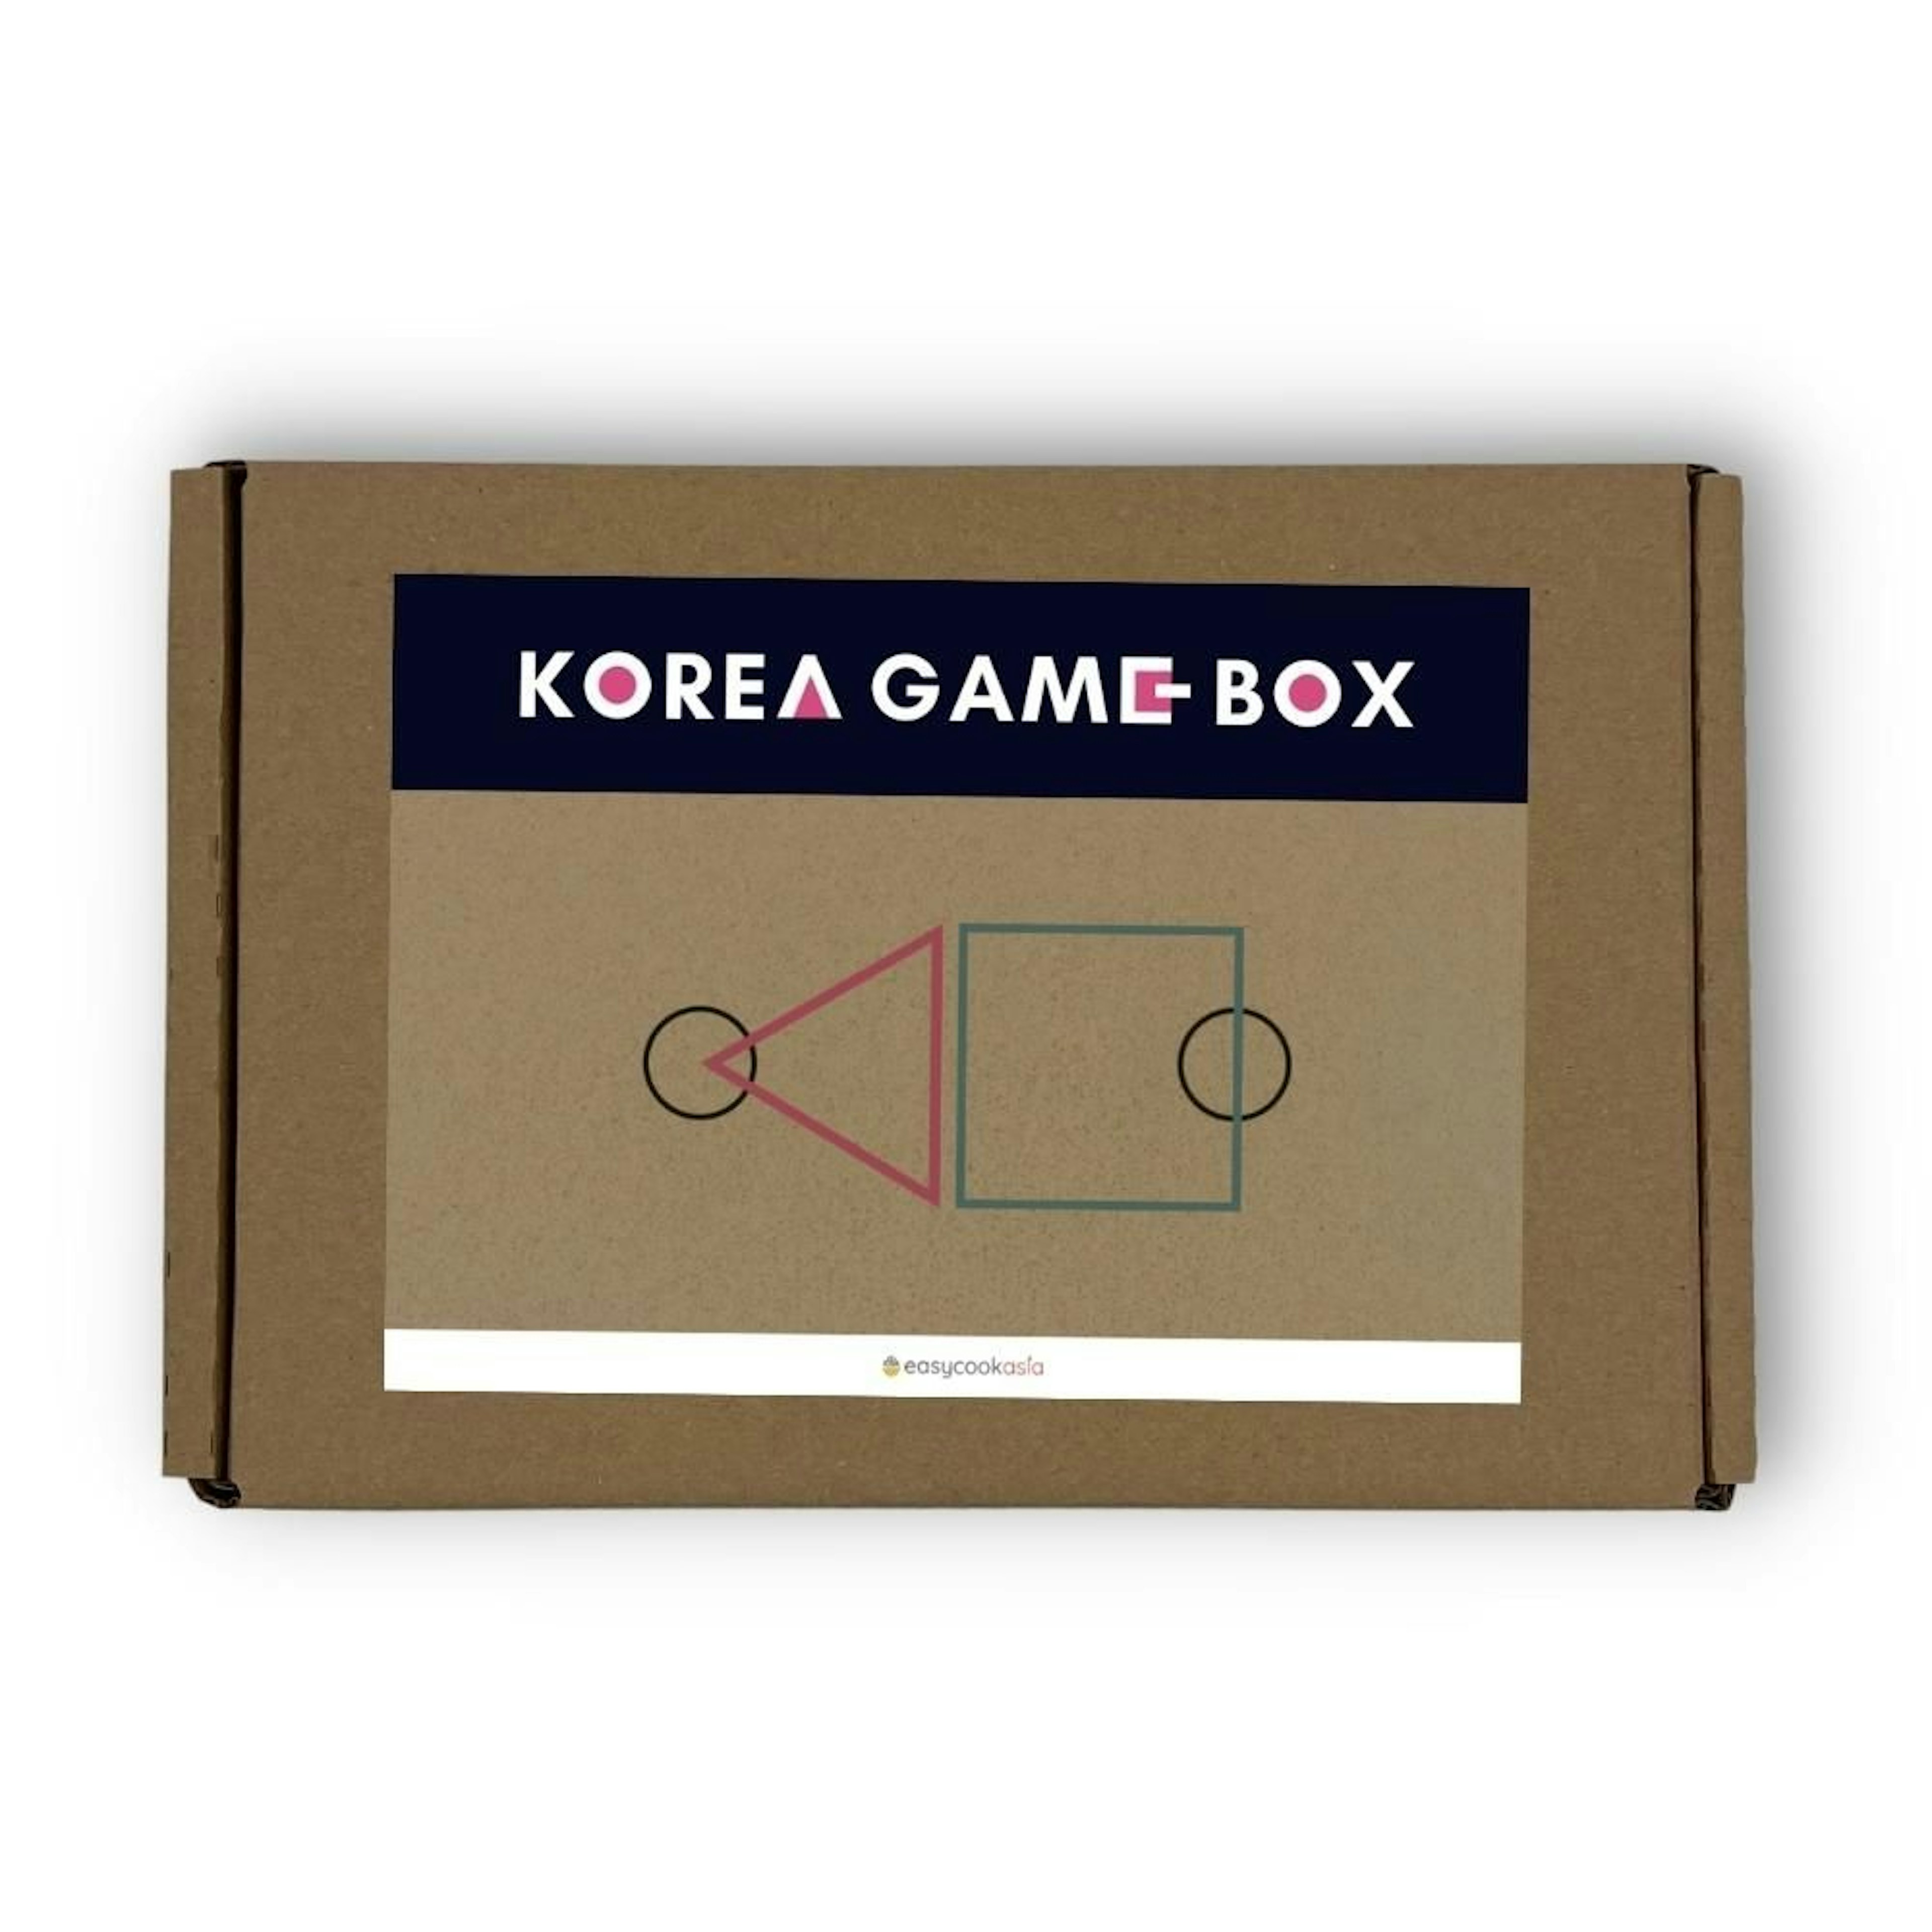 Korea Game Box